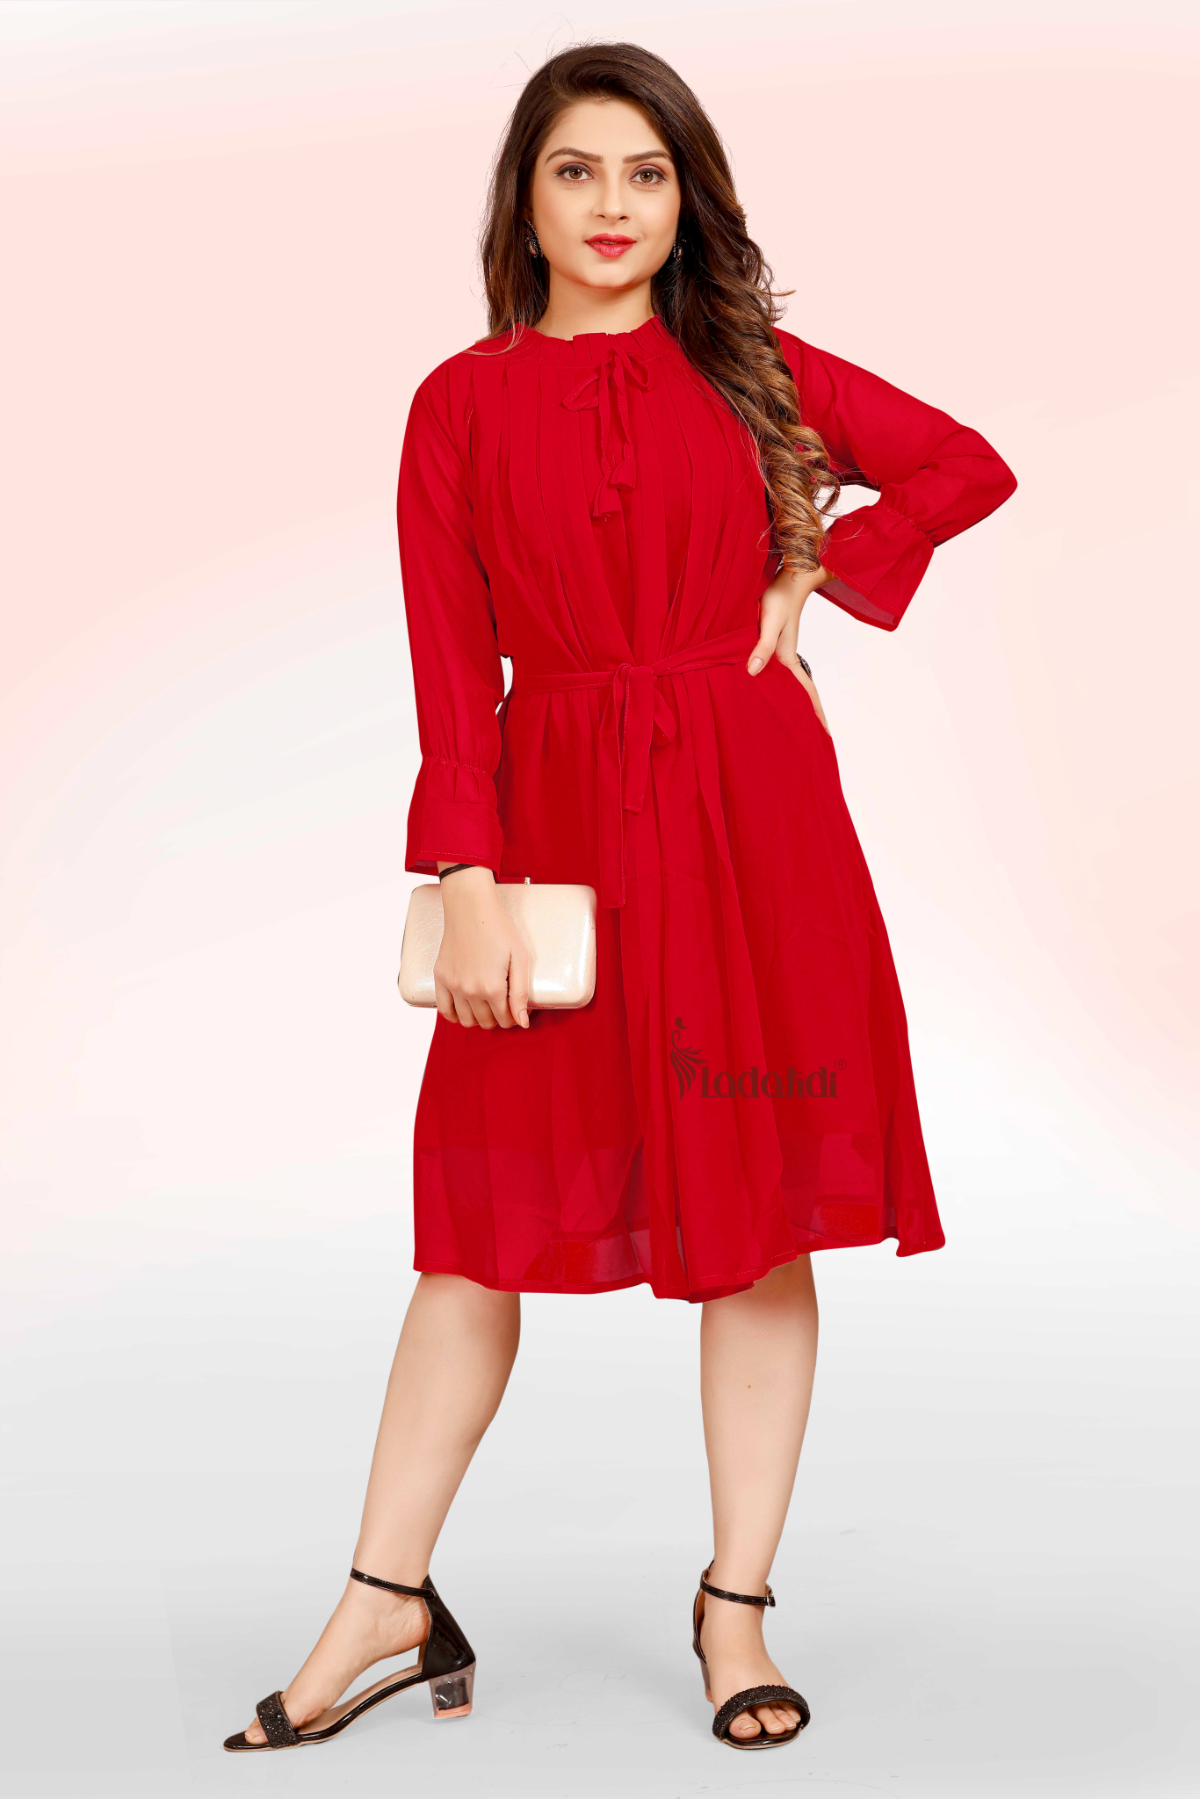 Buy Party Wear Rani Crushed Fancy Dress Online From Surat Wholesale Shop.